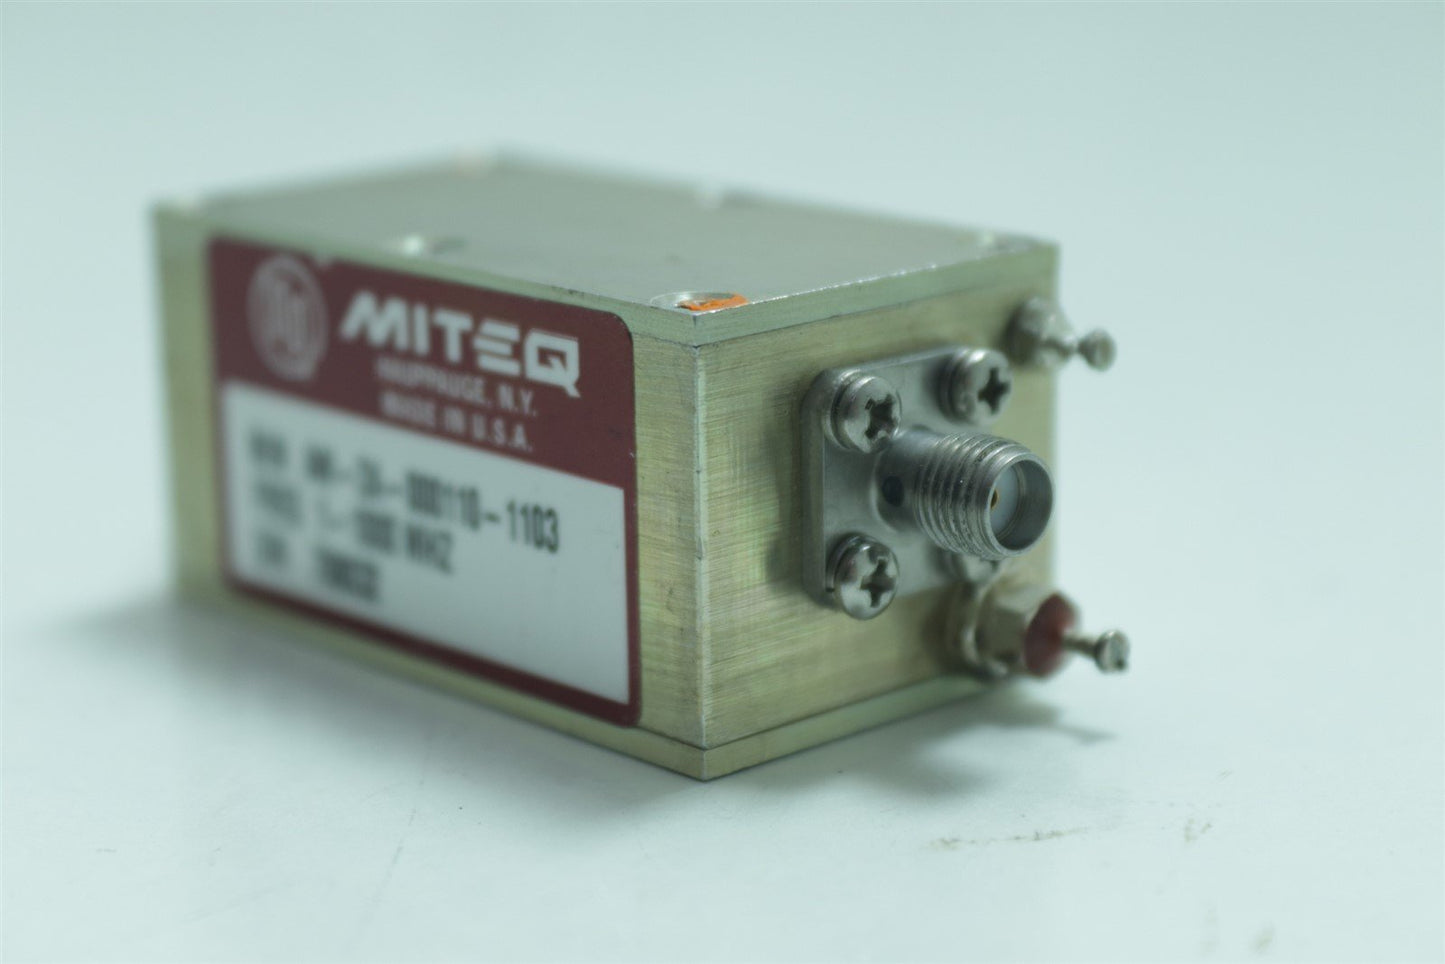 Miteq LNA Low Noise Amplifier 1-1000MHZ AM-2A-000110-1103 NO CABLES